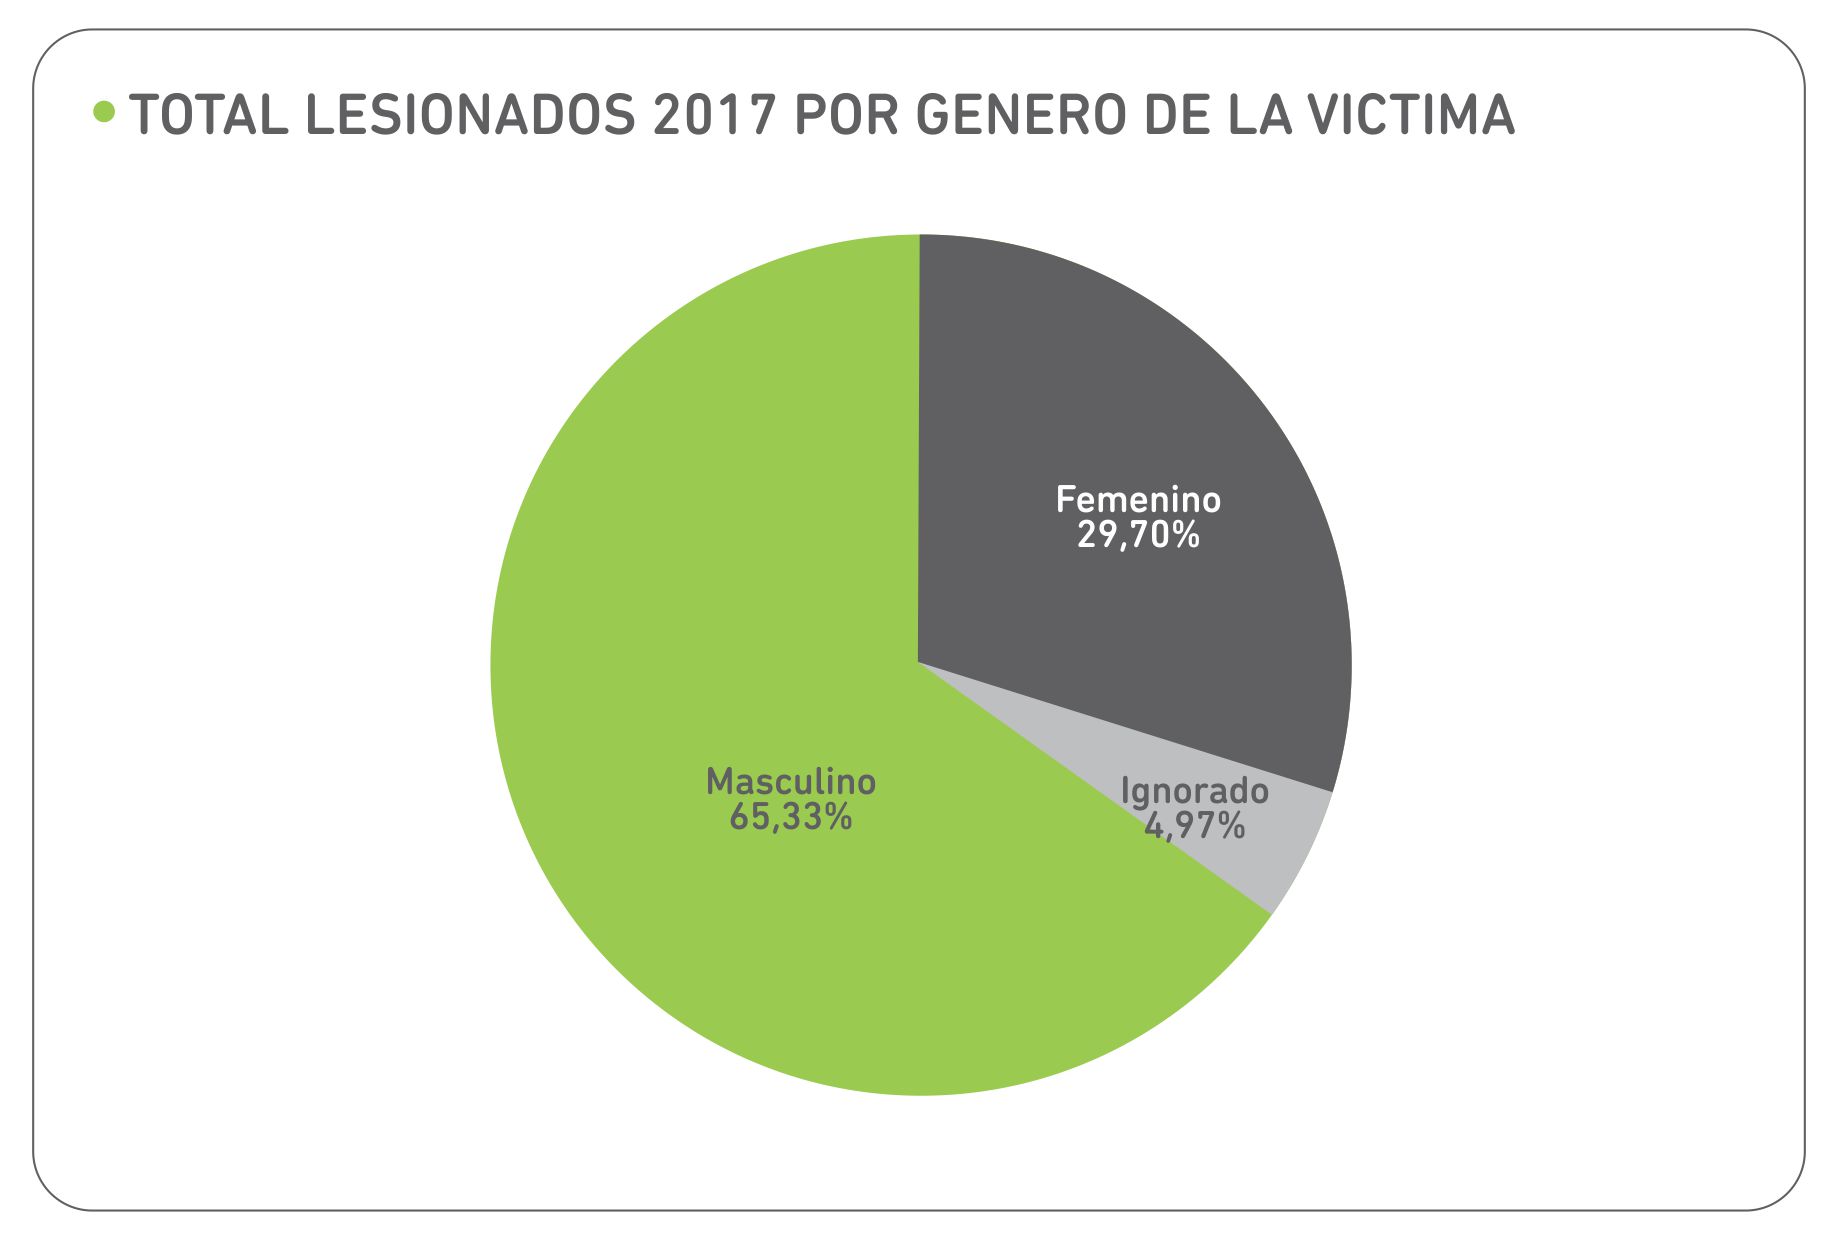 Lesionados en 2017 por género de la víctima